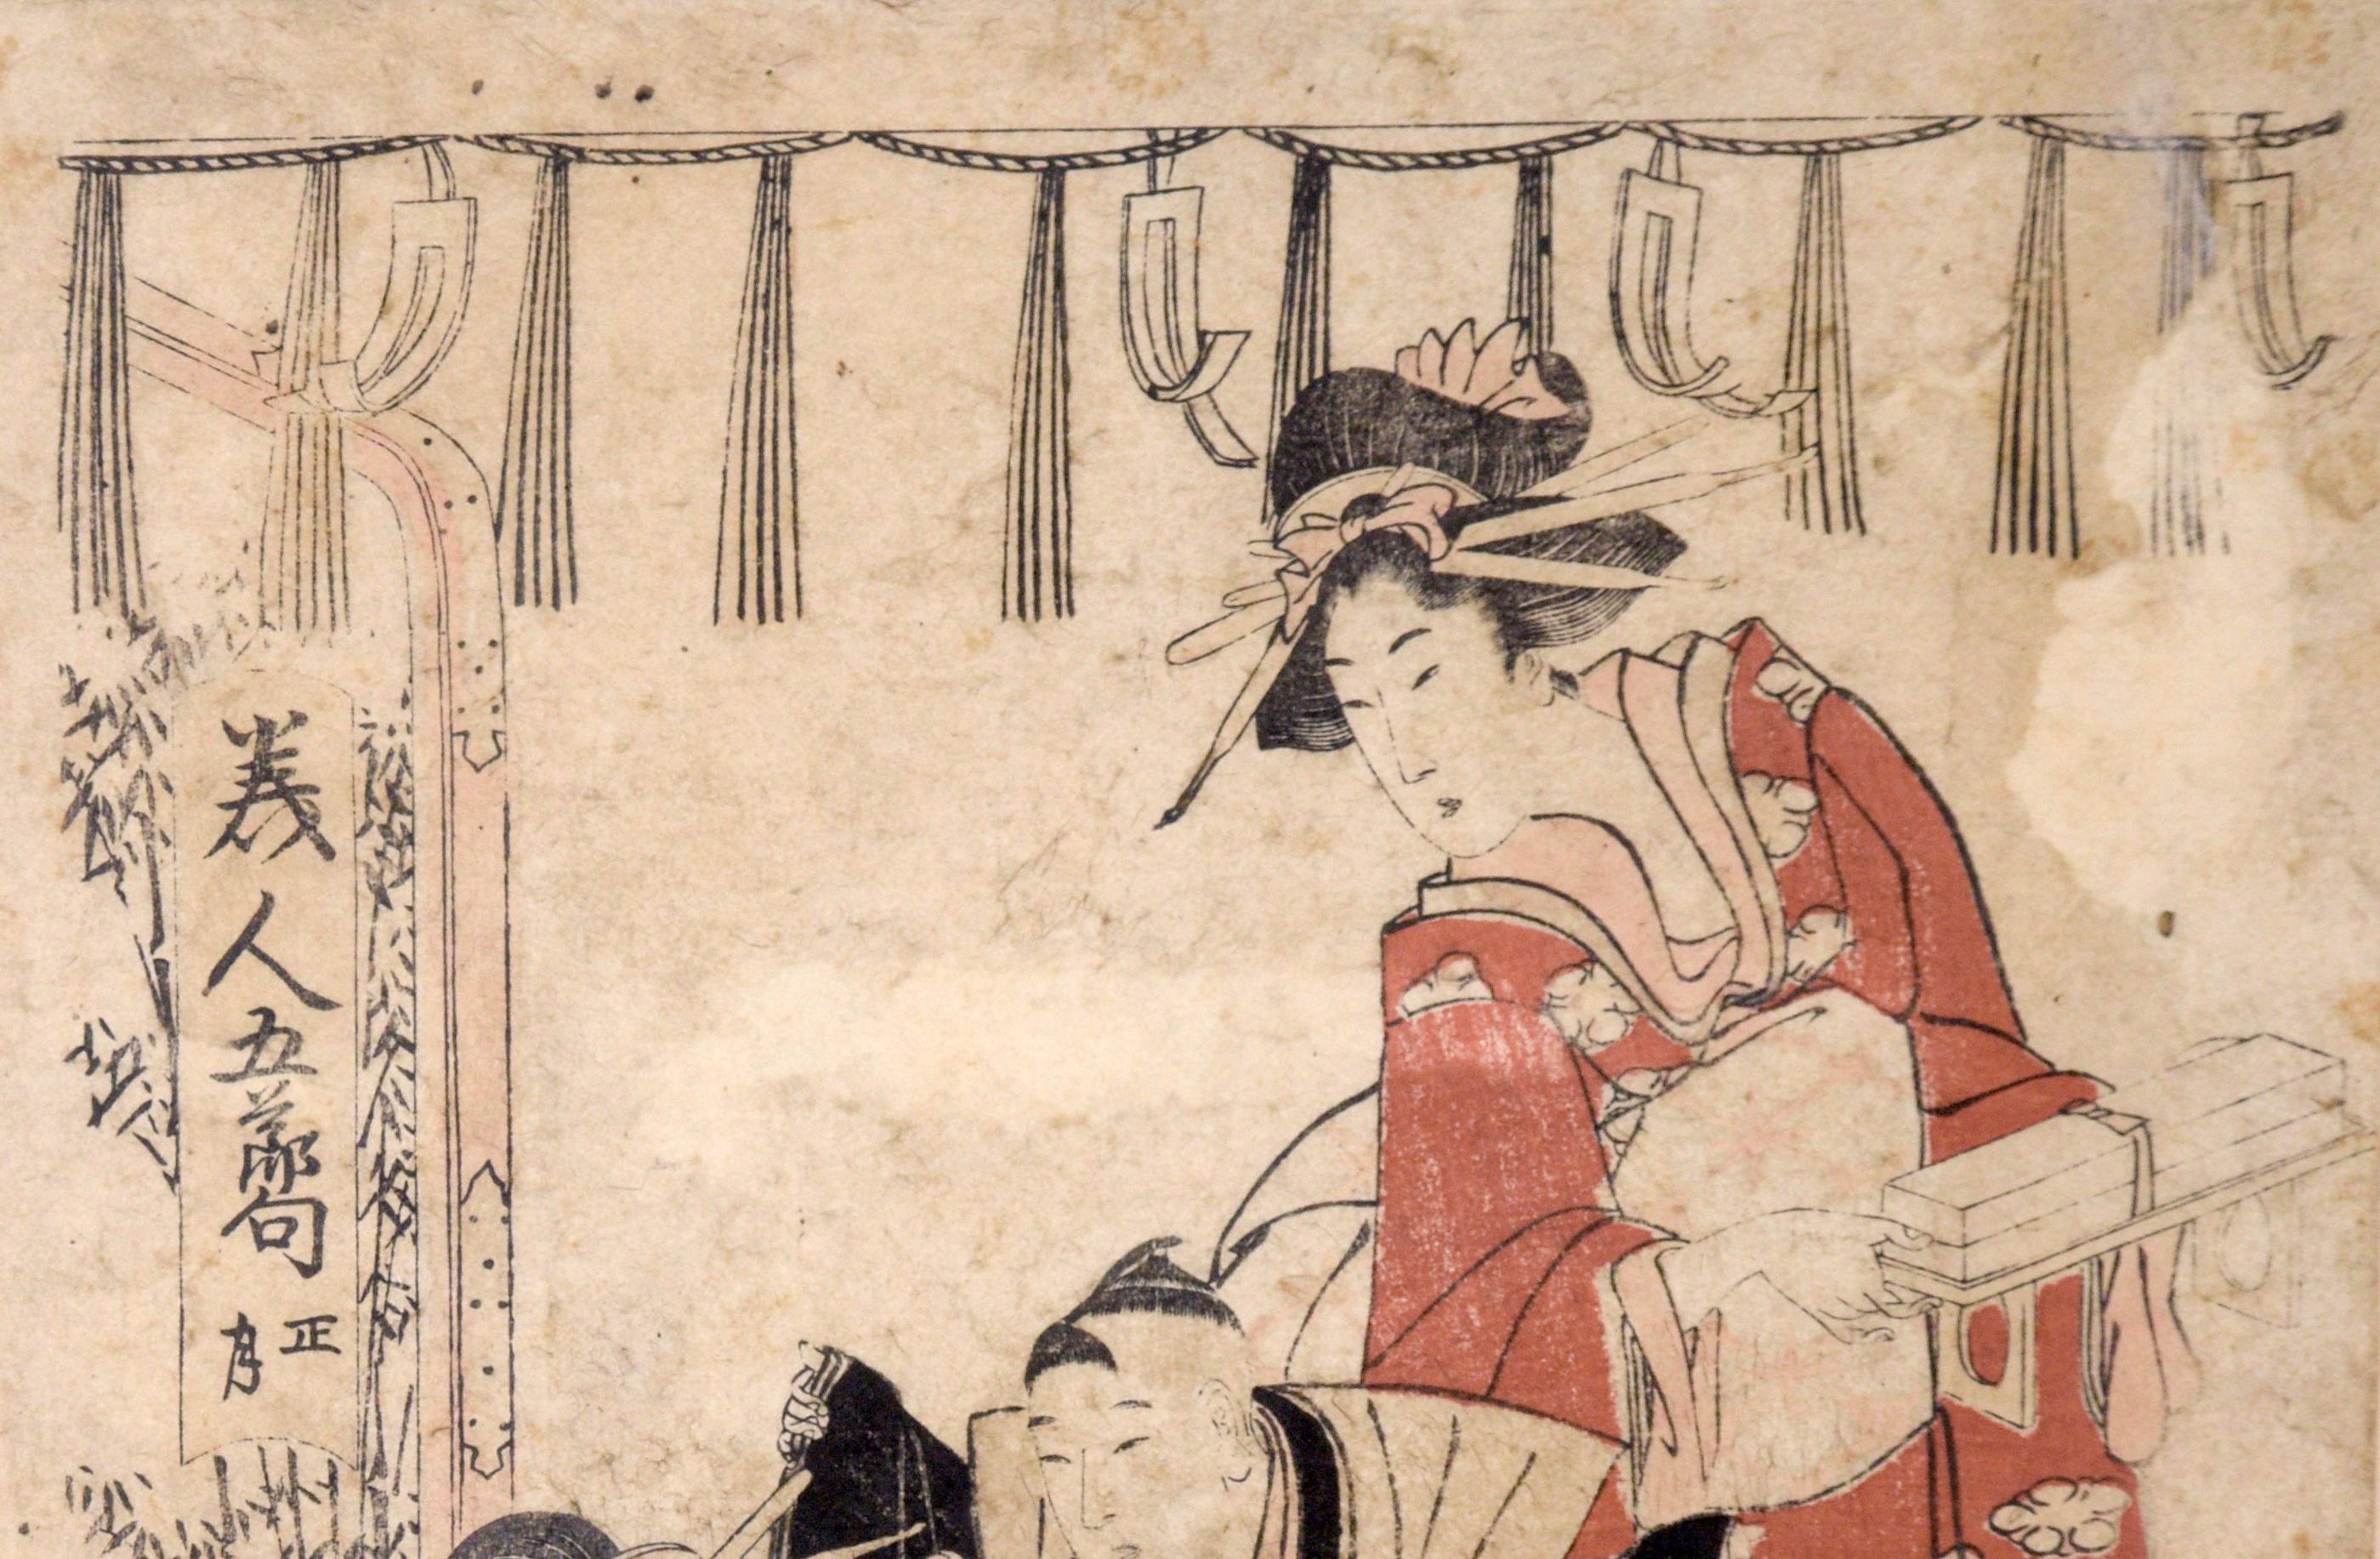 Robe du garçon Samurai - Kuniyoshi imprimé sur bois japonais original découpé en bois
Un jeune samouraï finit de s'habiller avec l'aide de sa jeune sœur sous le regard de sa mère. Utagawa Kumiyoshi (Japon, 1797 - 1861 ).
Présenté dans un cadre